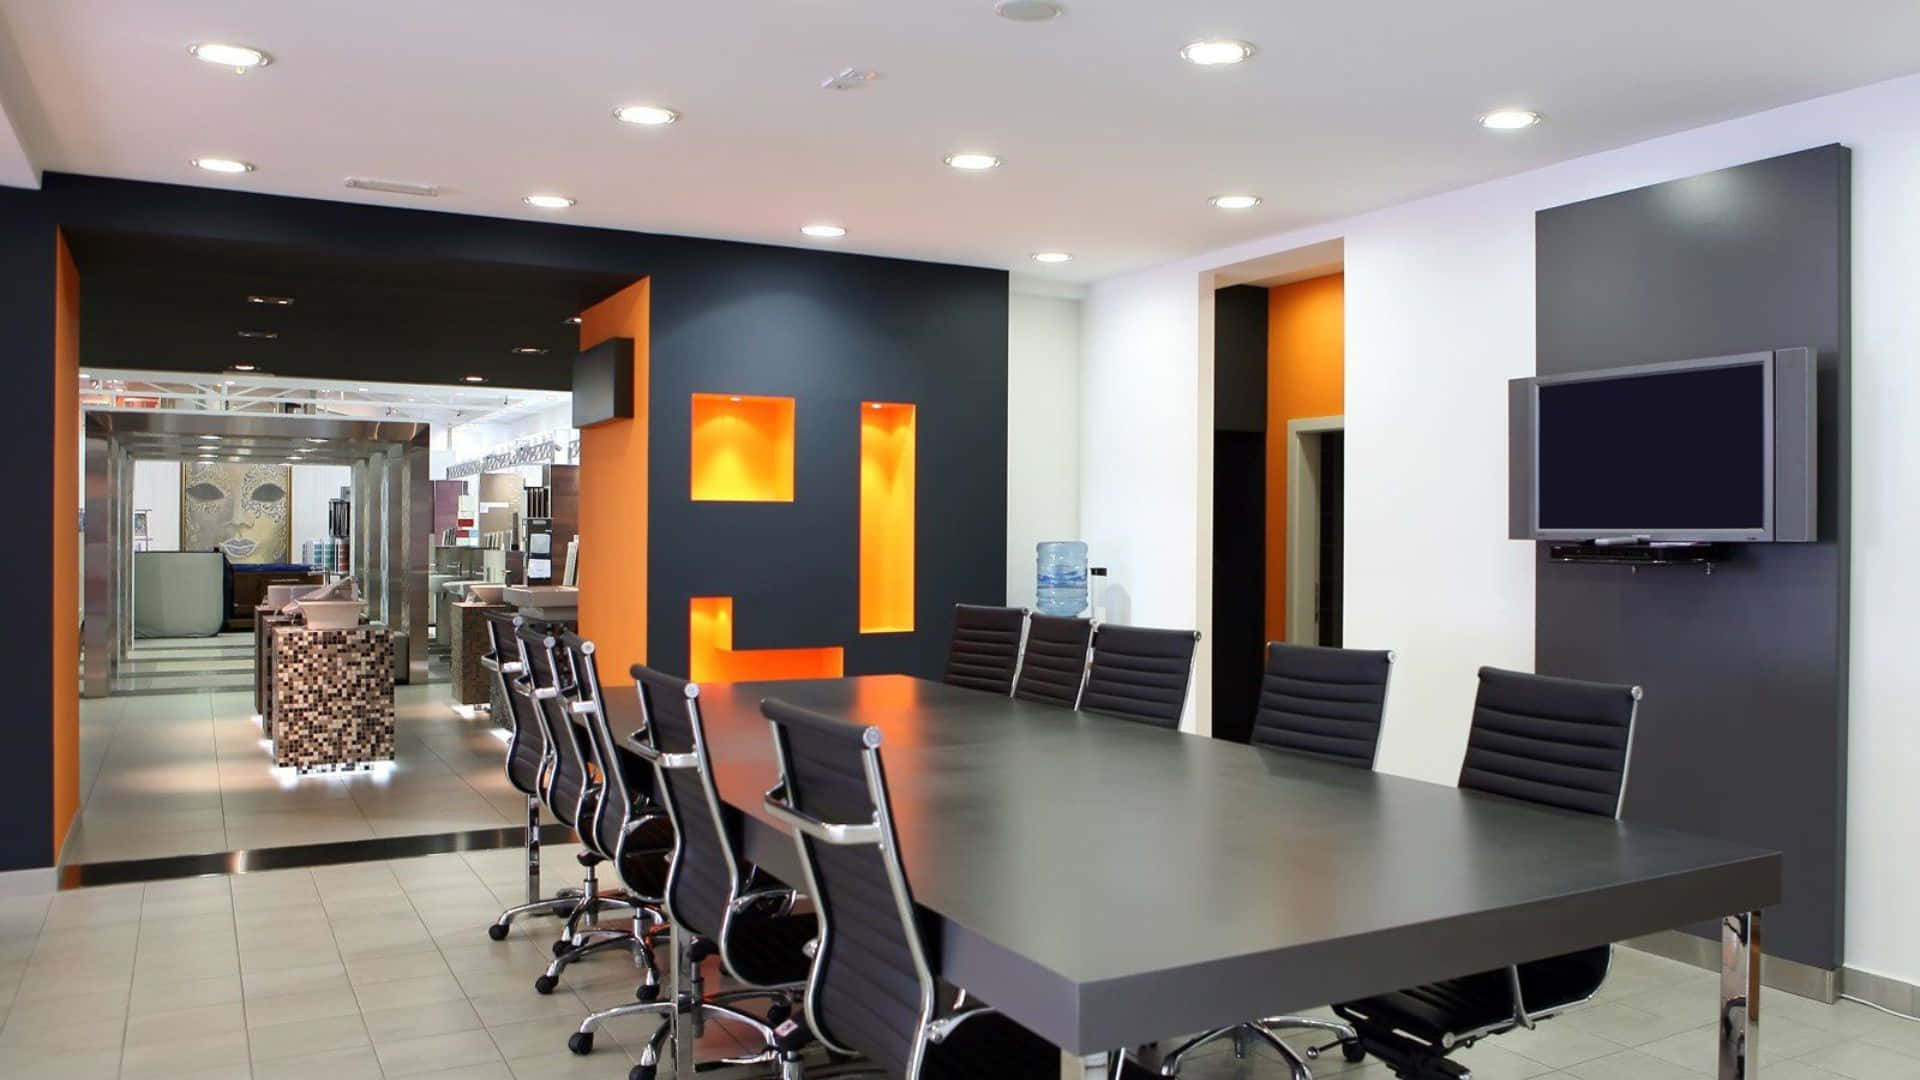 Ettkonferensrum Med Orangea Väggar Och Svarta Möbler